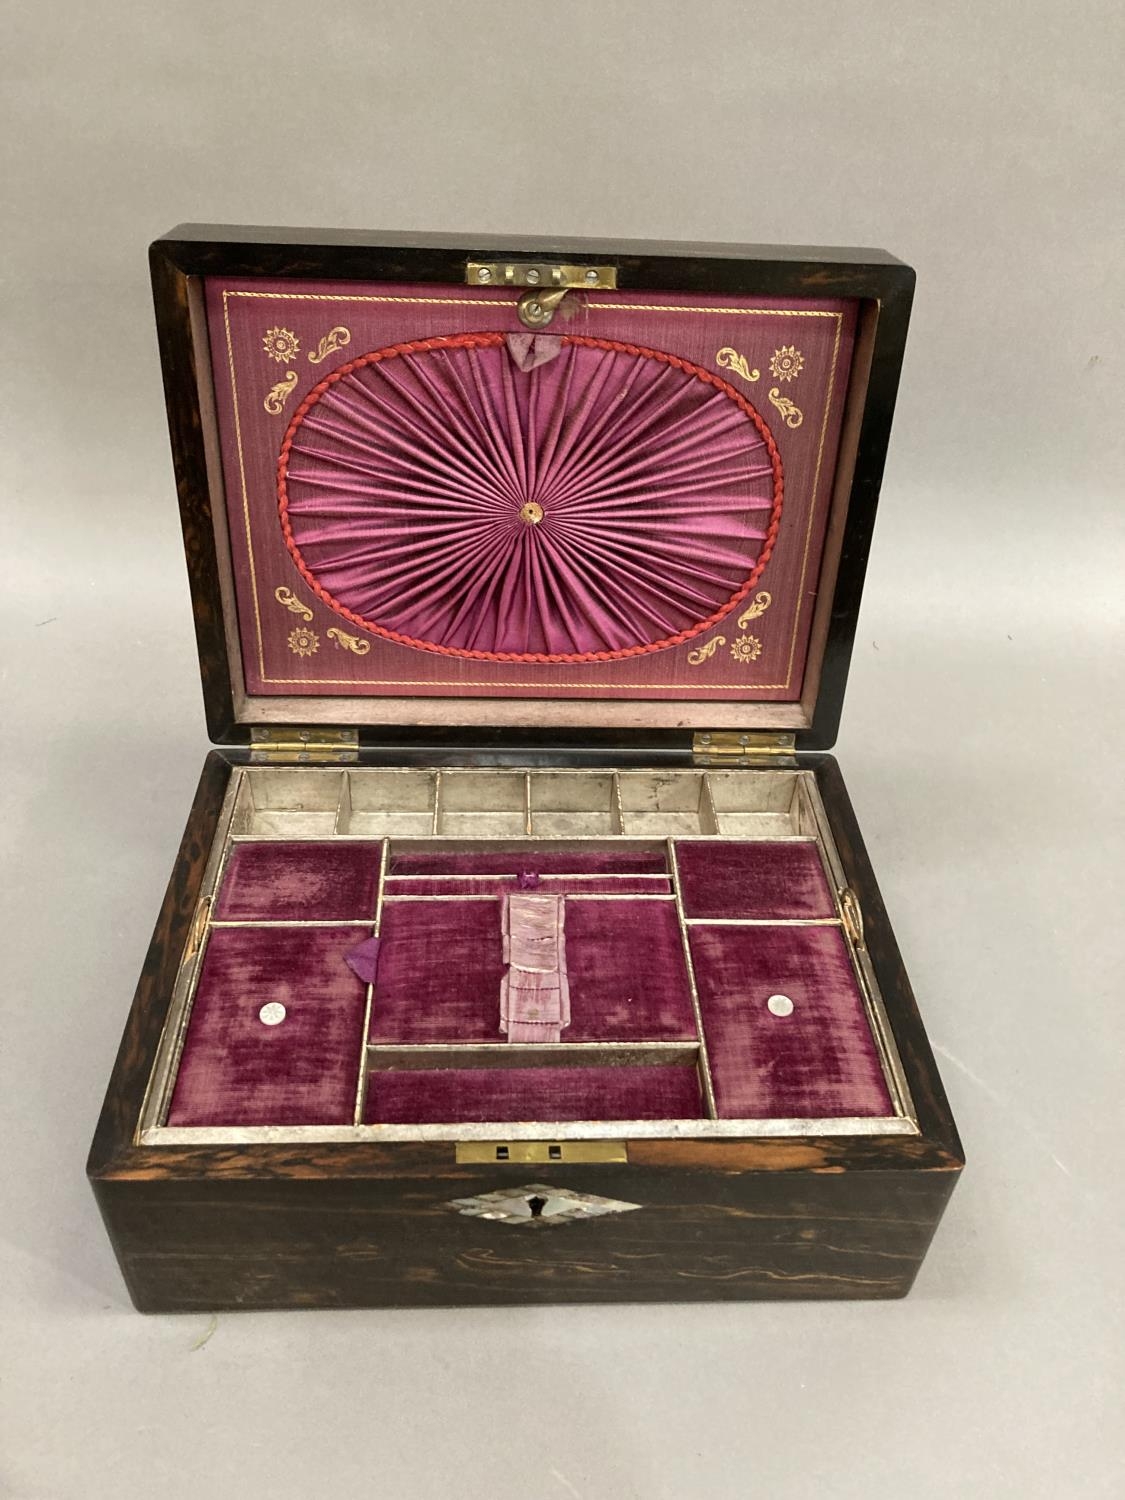 A 19th century coromandel work box inlaid with abalone cartouche and escutcheon, the interior